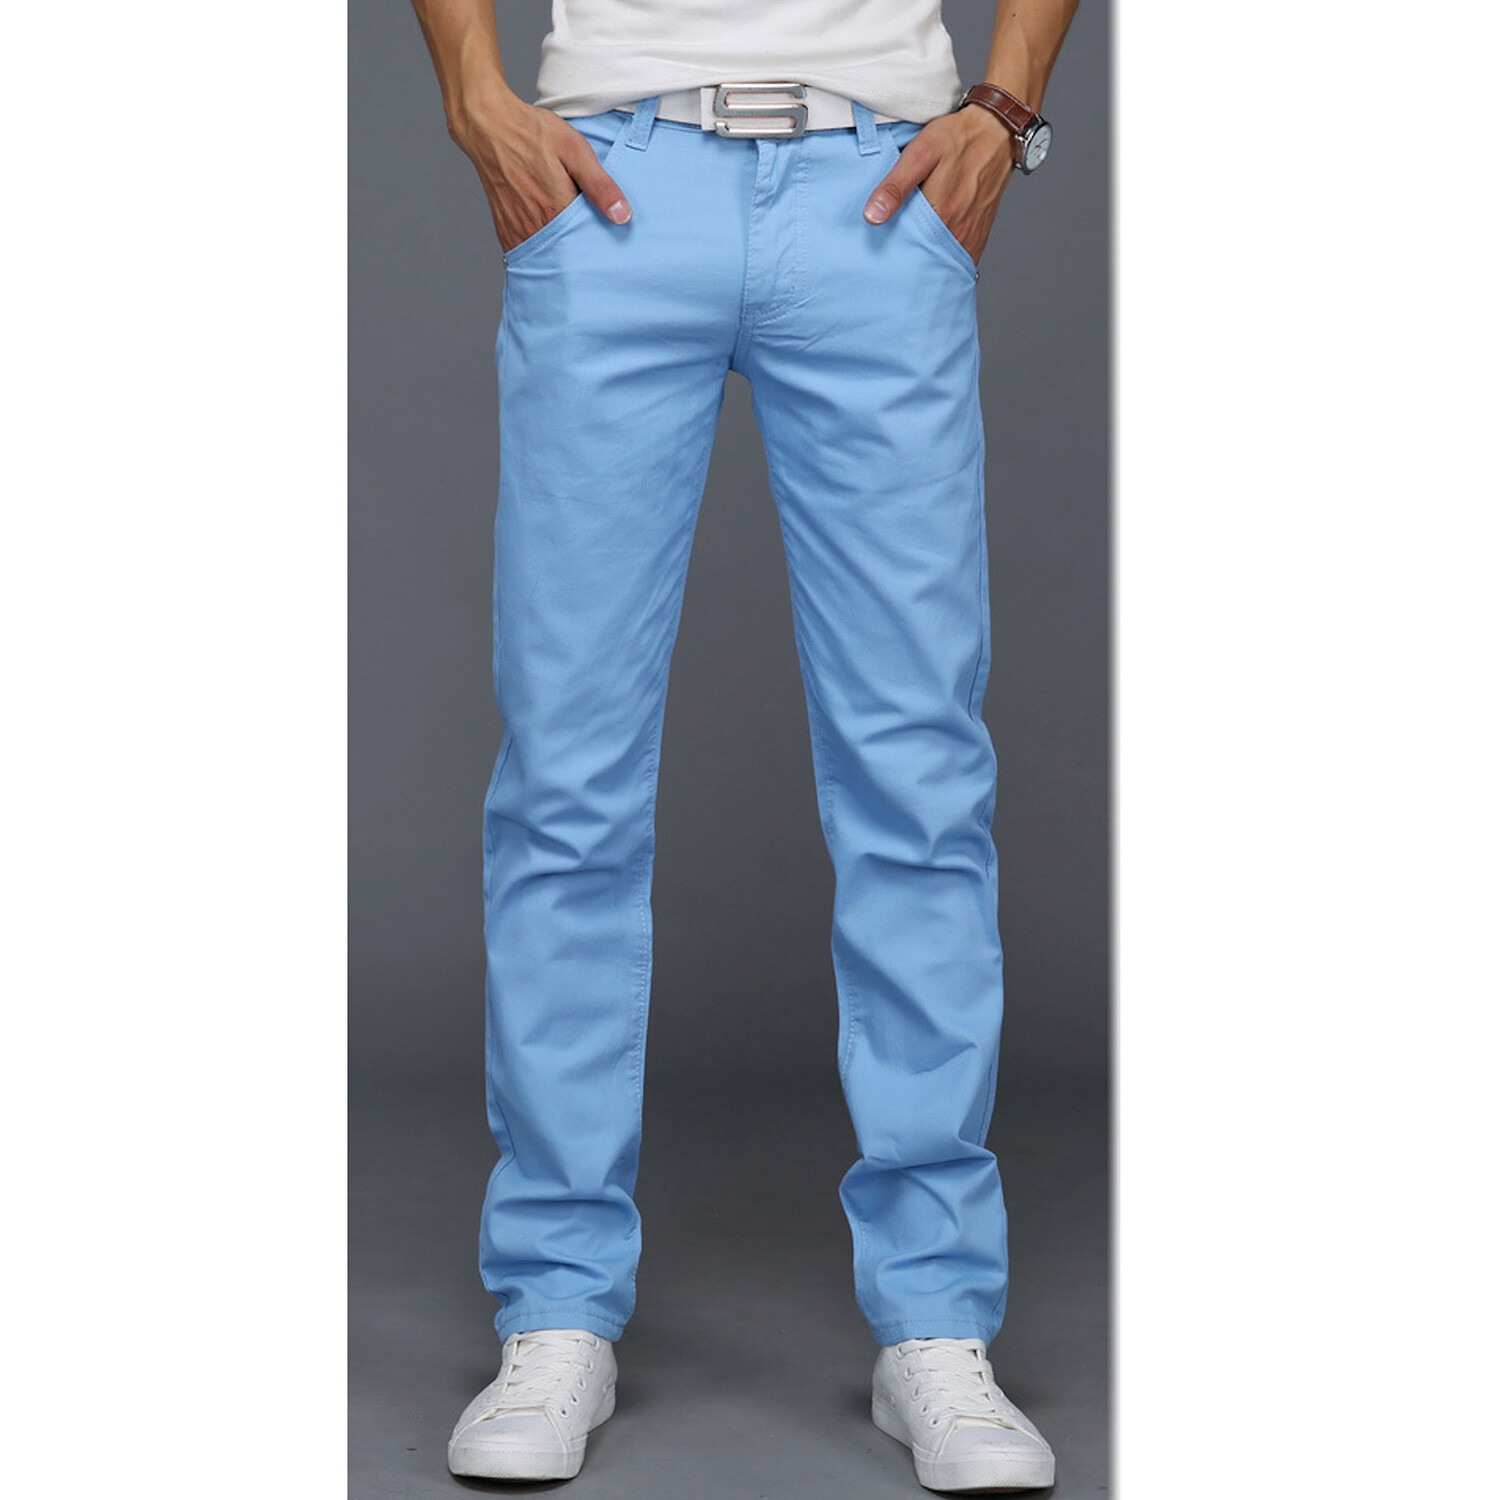 Slit Pocket Straight Leg Spring Pants // Light Blue (34) - Celino ...